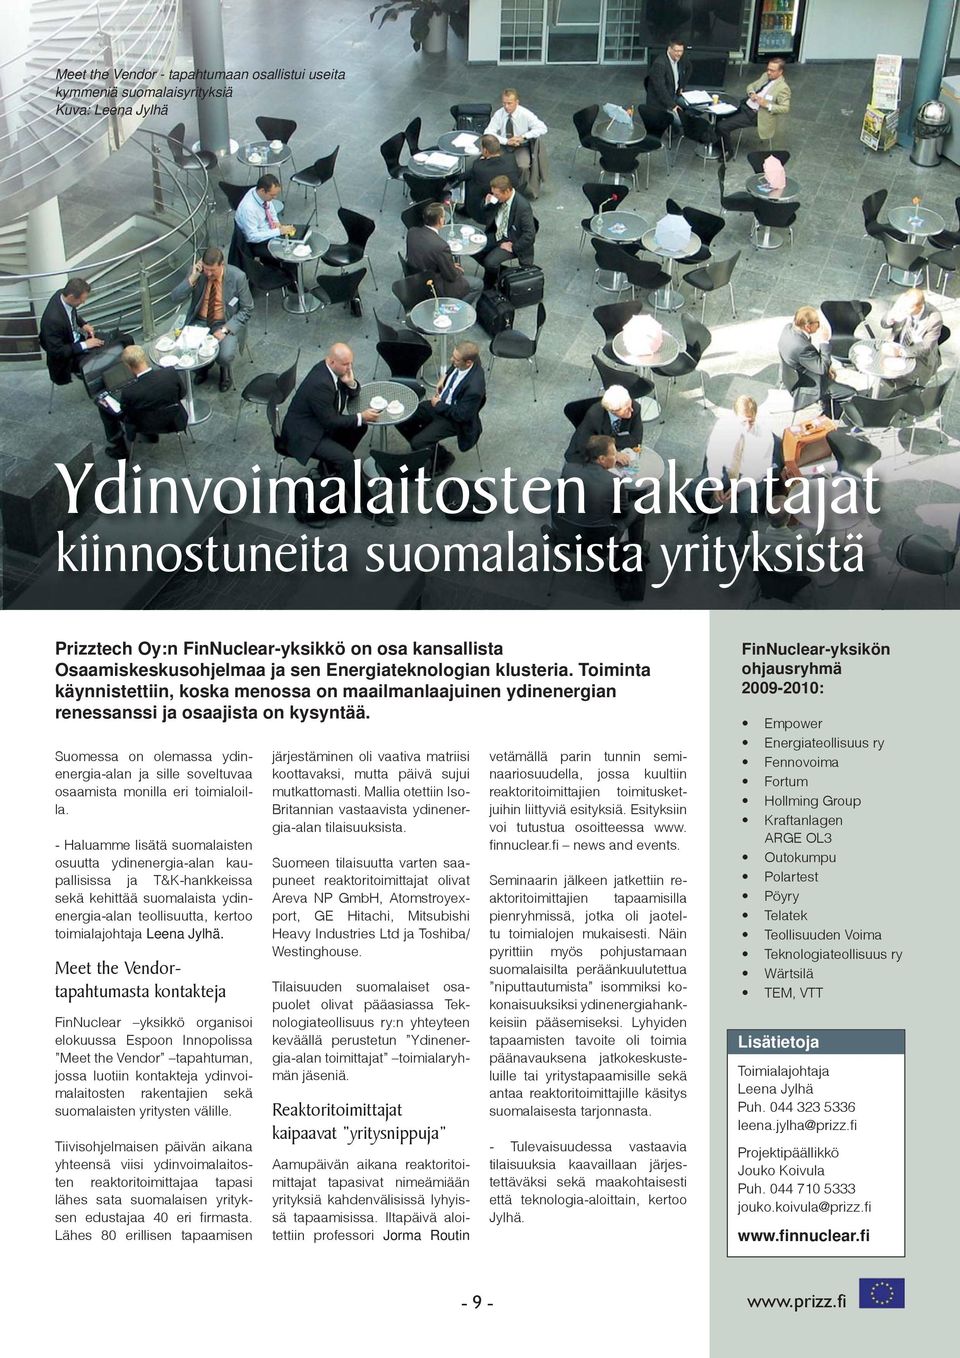 Suomessa on olemassa ydinenergia-alan ja sille soveltuvaa osaamista monilla eri toimialoilla.